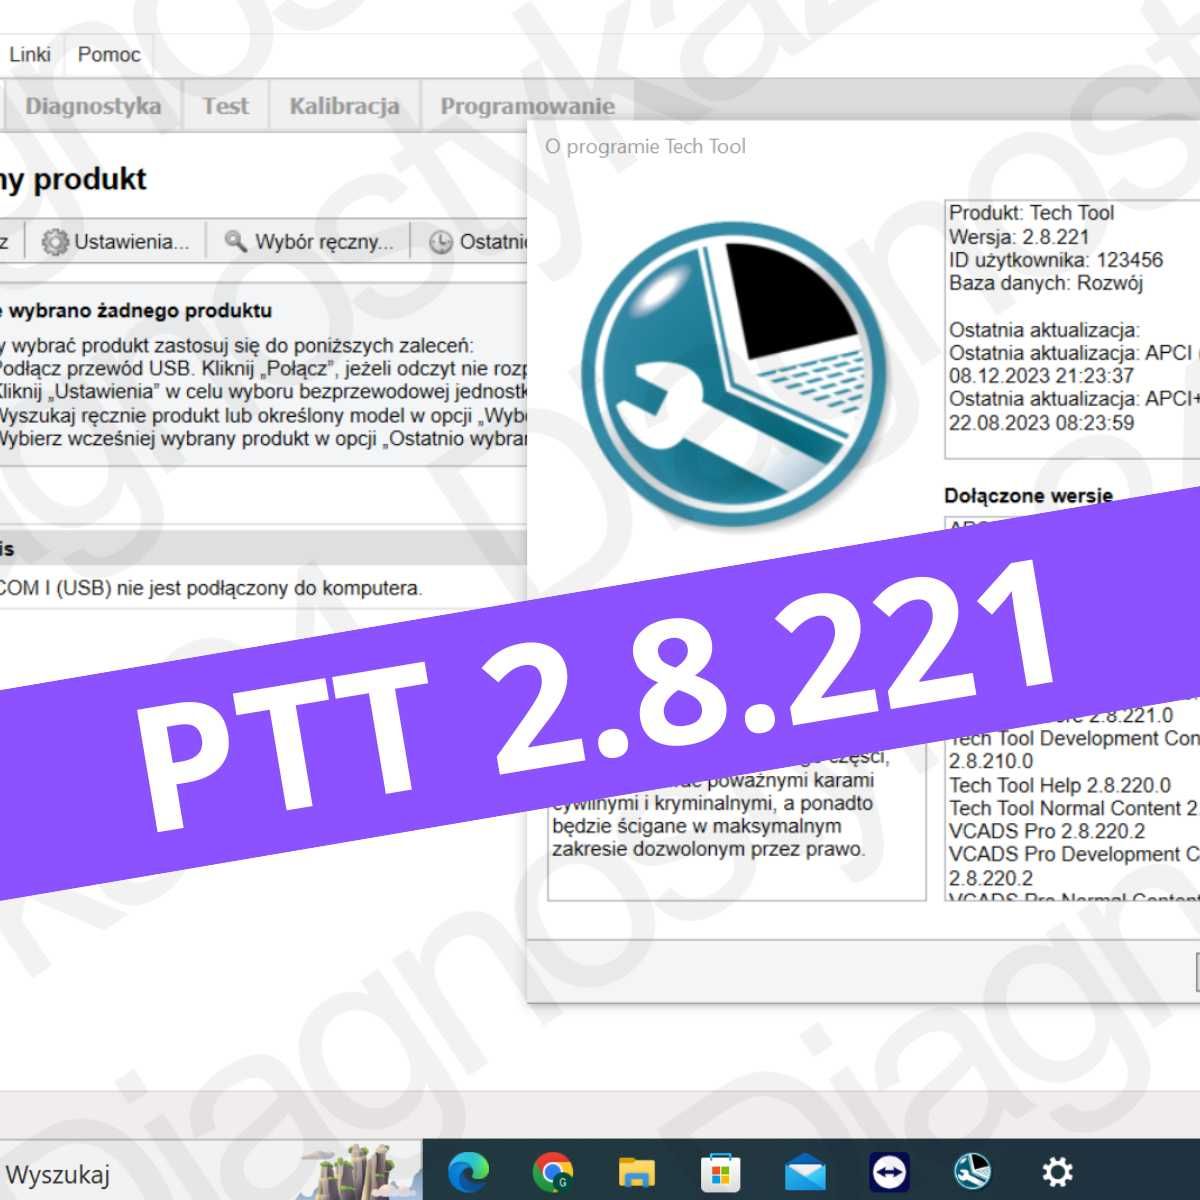 NAJNOWSZE Oprogramowanie Tech Tool 2.8.221 Vocom Volvo Diagnostyka